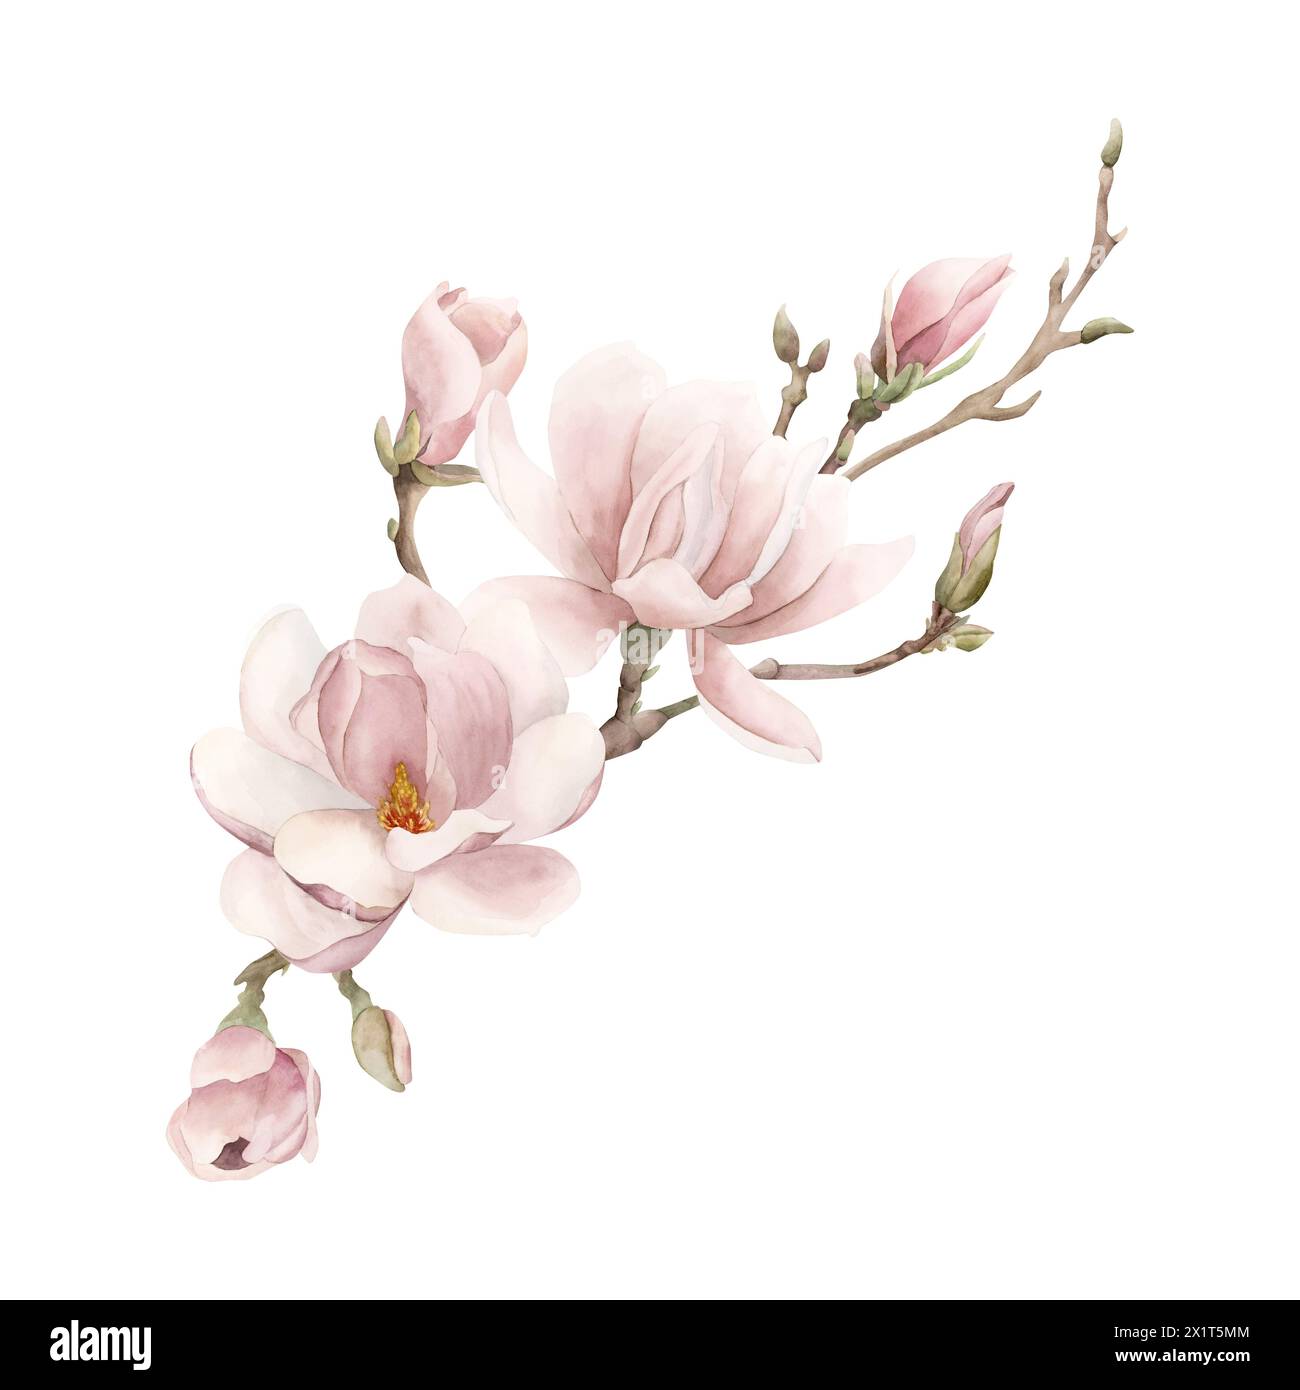 Composizione di fiori, gemme e rametti di magnolia rosa chiaro. Illustrazione ad acquerello floreale dipinta a mano isolata su sfondo bianco. Fioritura primaverile Foto Stock